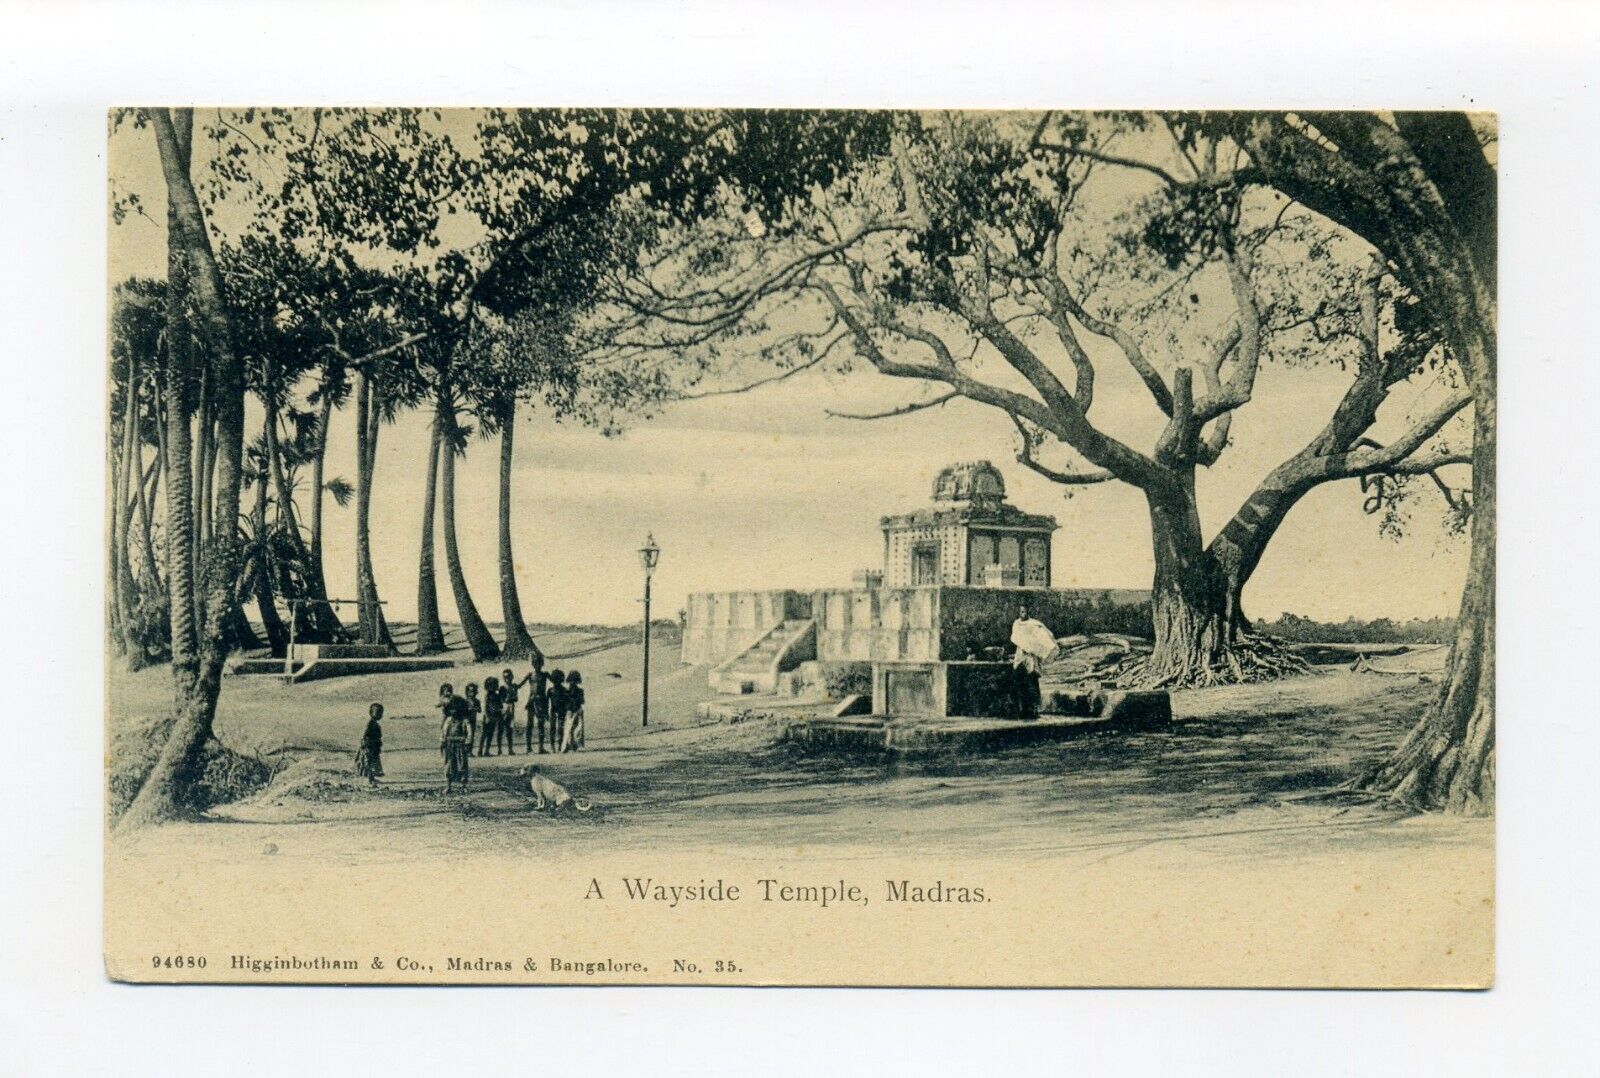 India, Chennai postcard, people & dog outside Wayside Temple under large tree